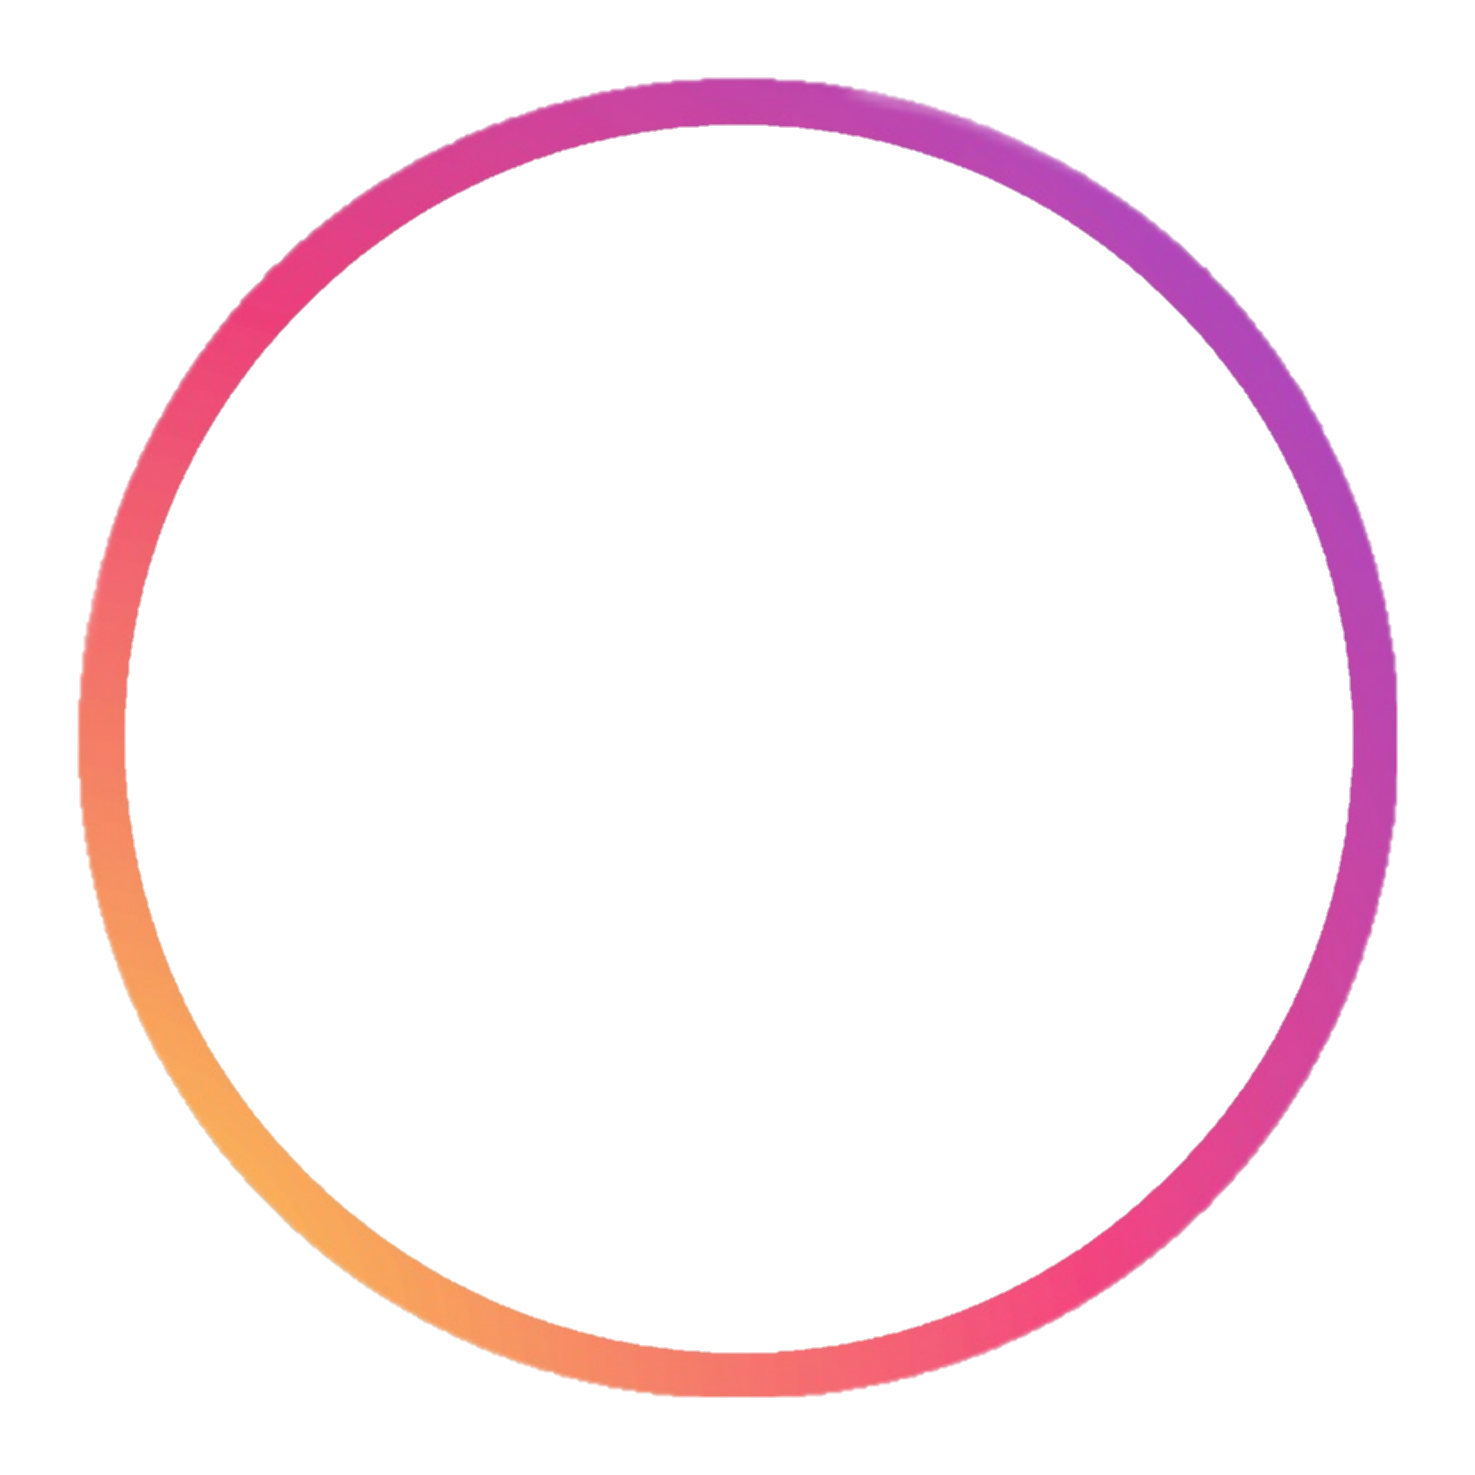 Круг для сторис. Кружок обводка на прозрачном фоне. Красивый круг для логотипа. Круглая рамка.